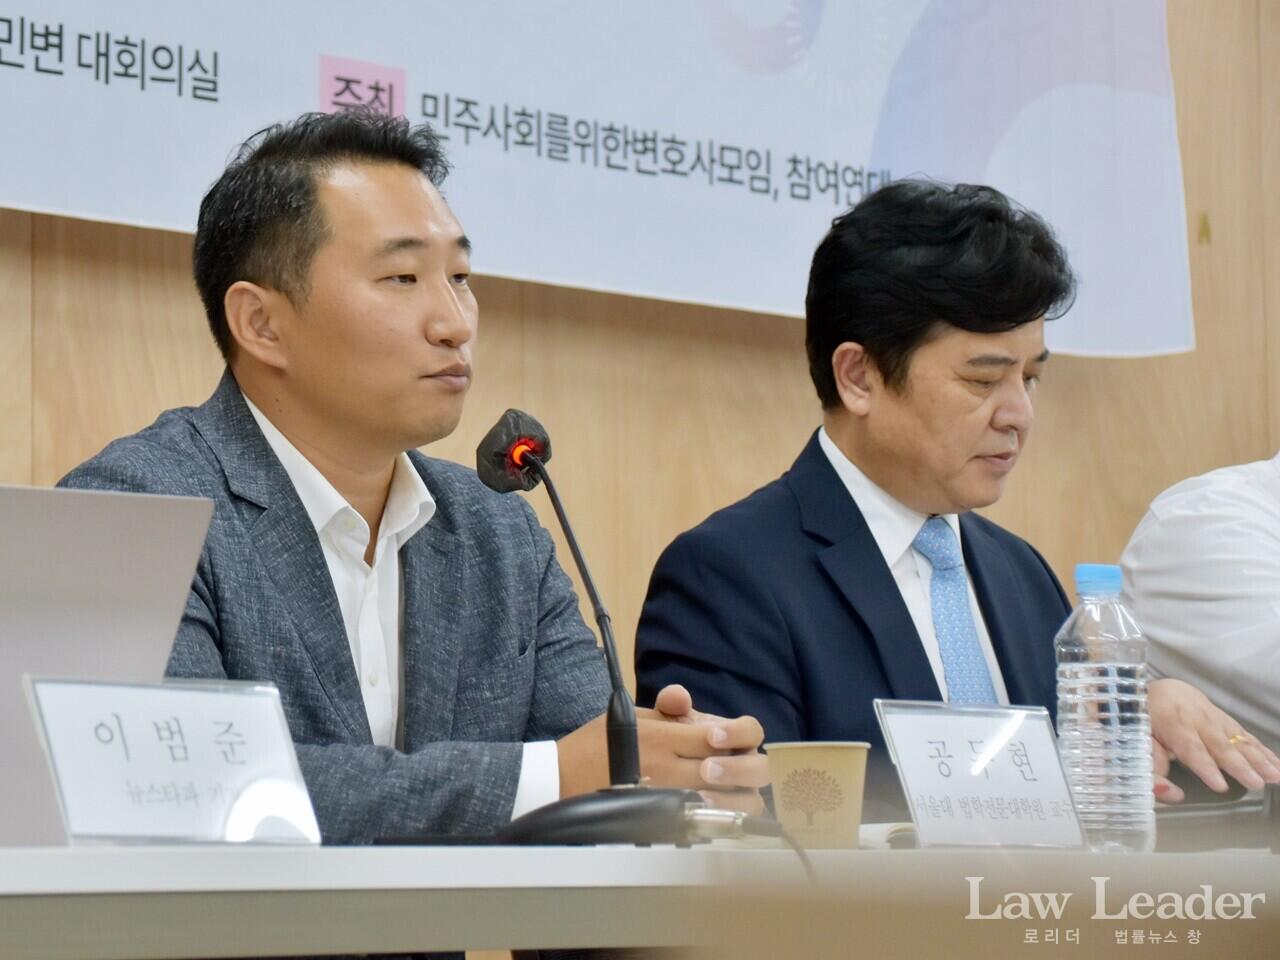 서울대학교 법학전문대학교 공두현 교수(왼쪽)